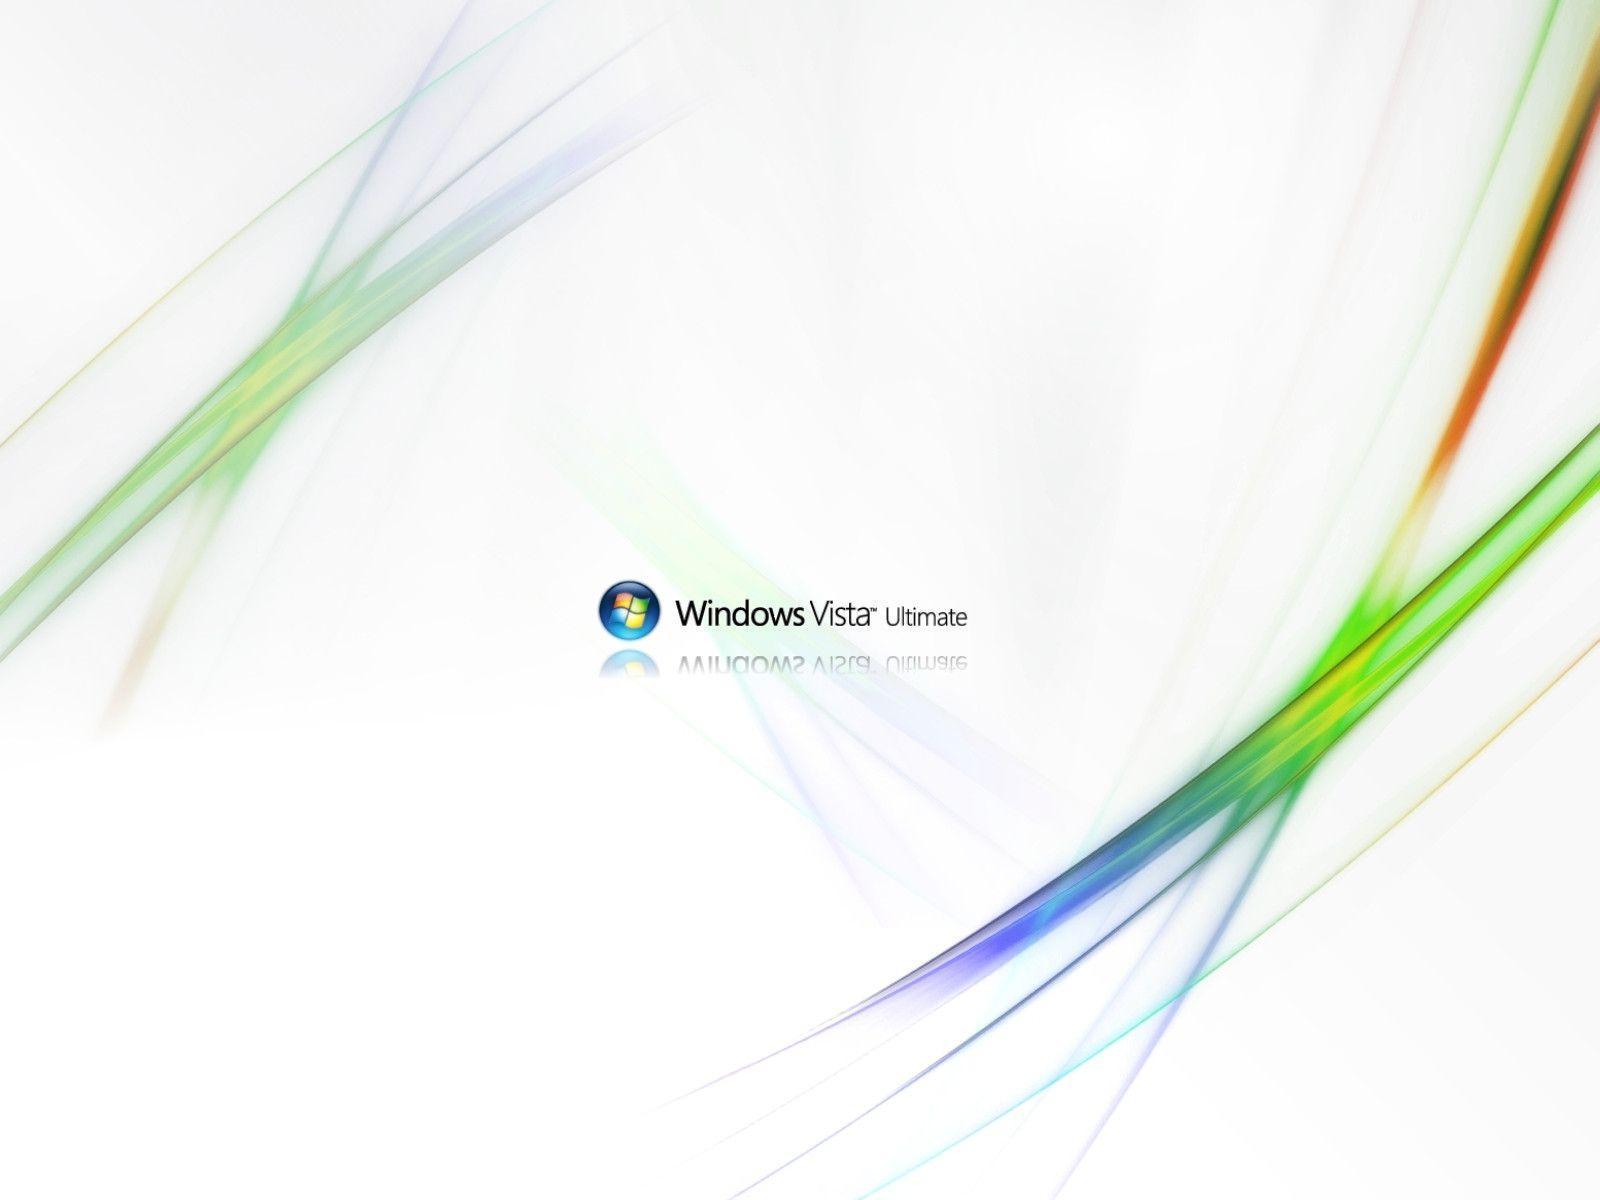 Windows Vista Ultimate White 3030 HD Wallpaper Picture. Top